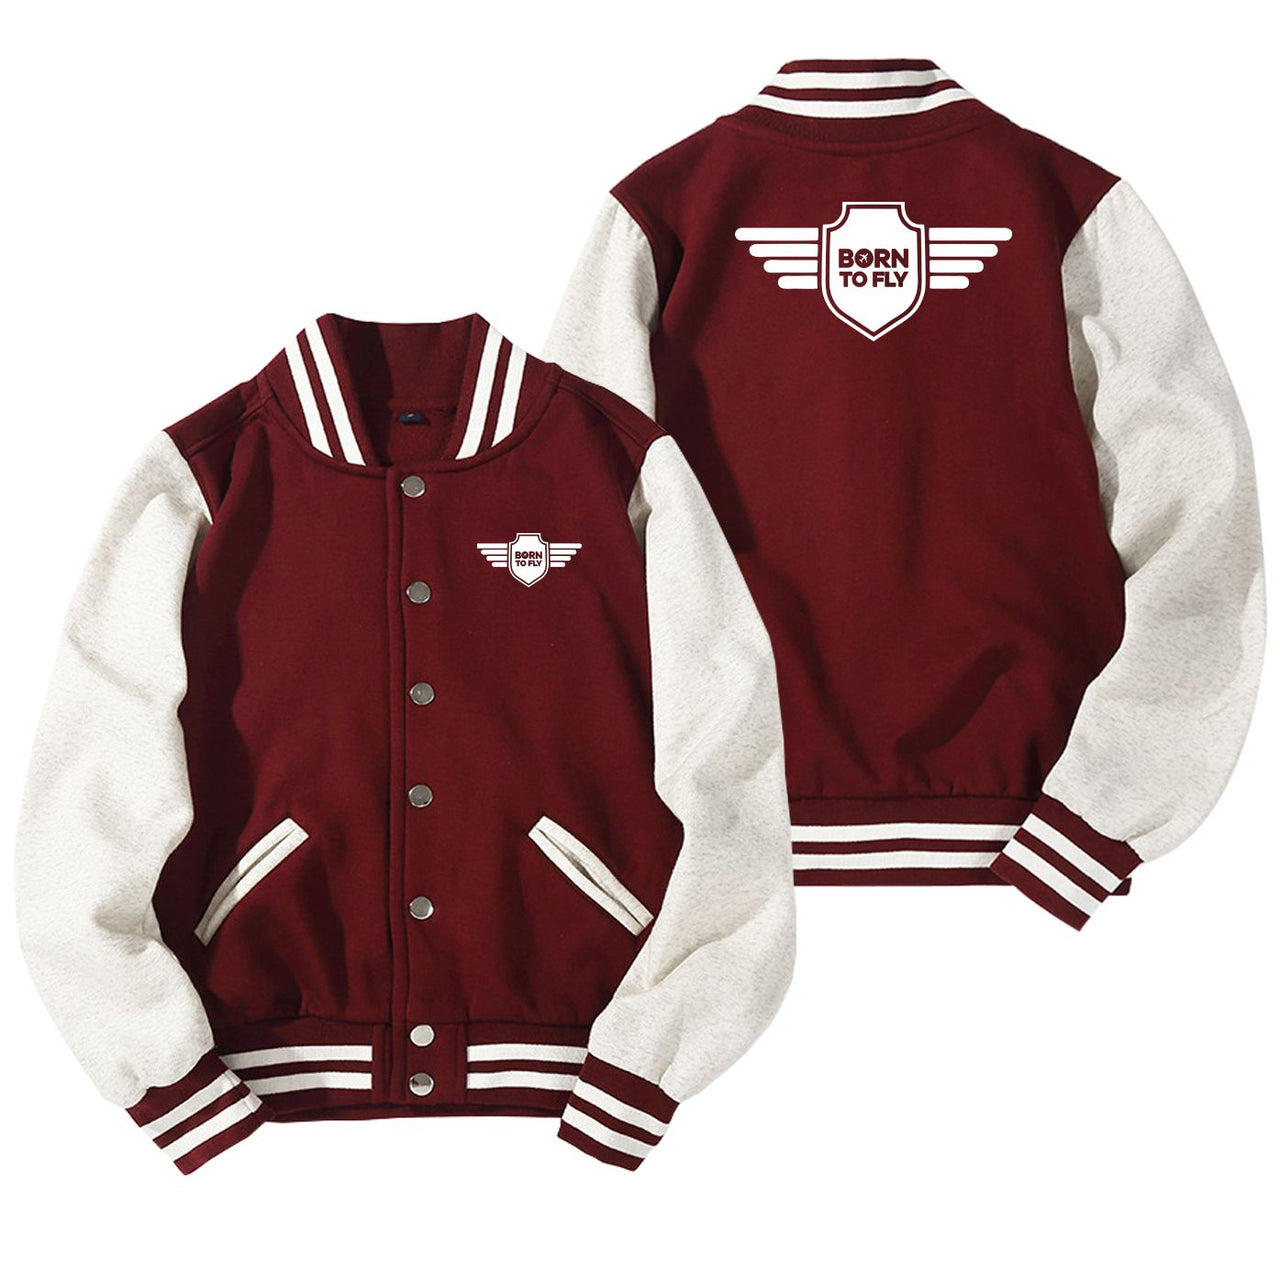 Born To Fly & Badge Designed Baseball Style Jackets